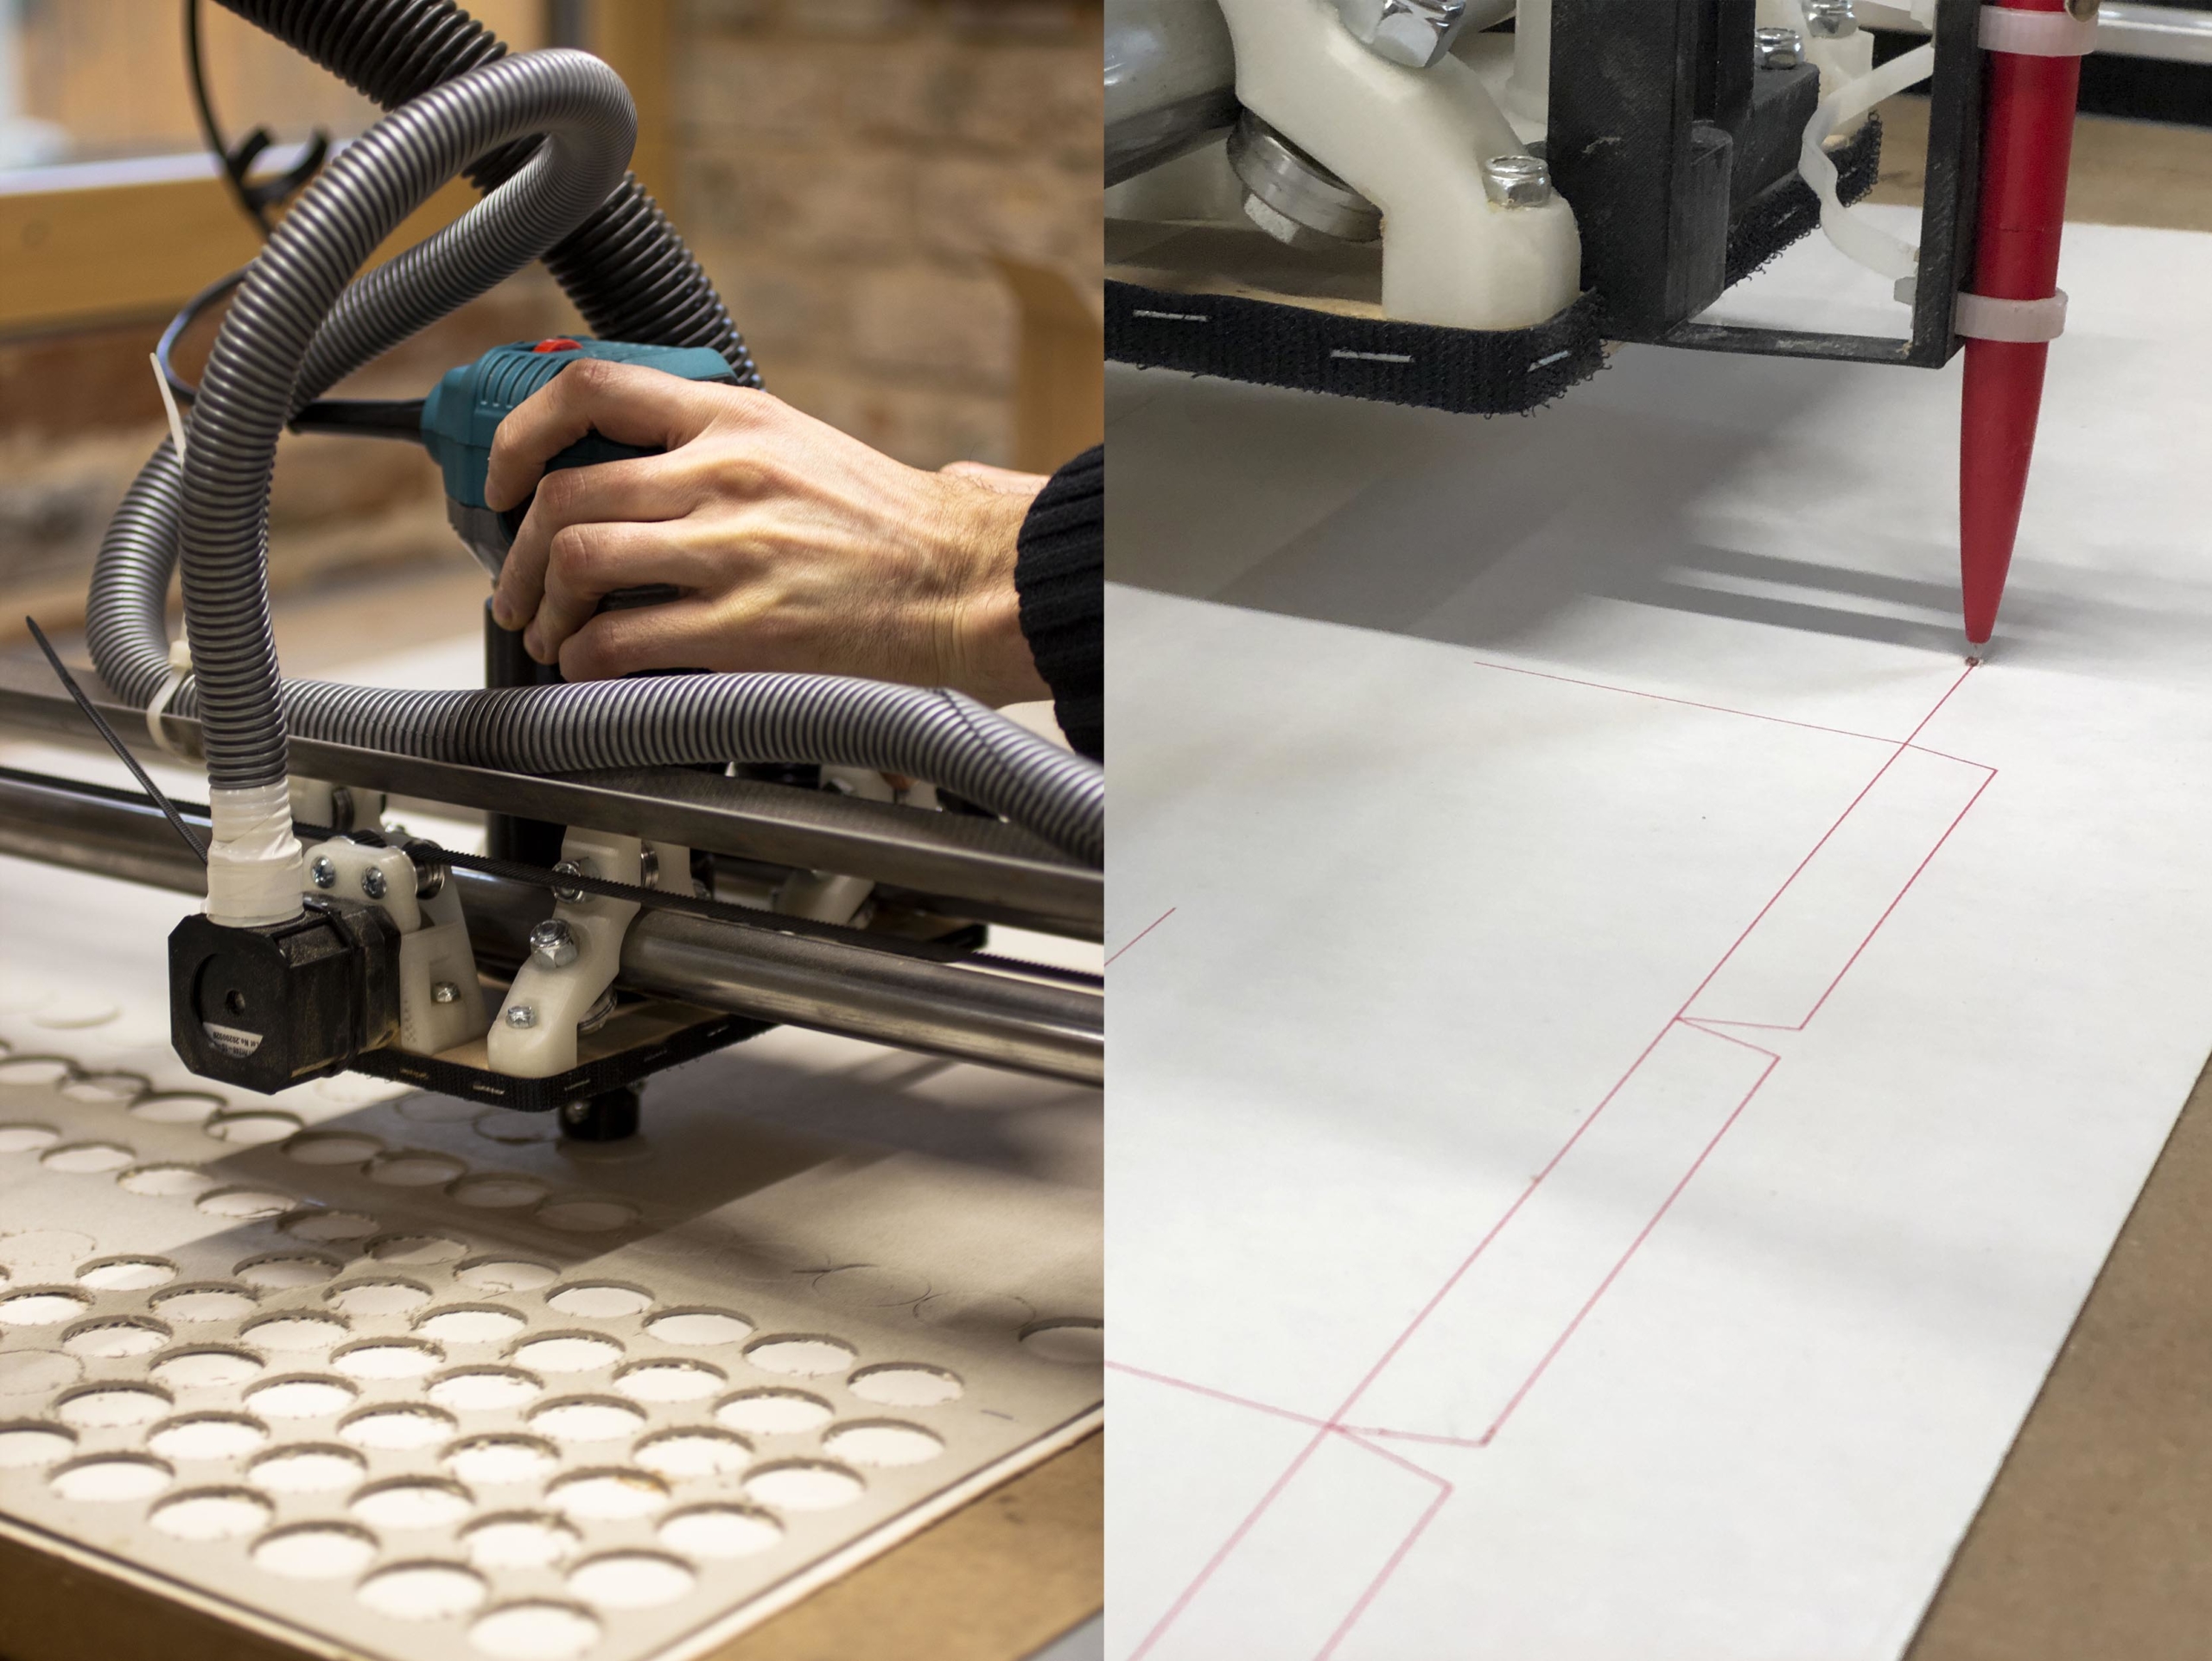 Photos prises lors du prototypage en atelier avec découpe des jetons et dessin des tracés des gabarits à l'aide d'une commande numérique d'usinage.